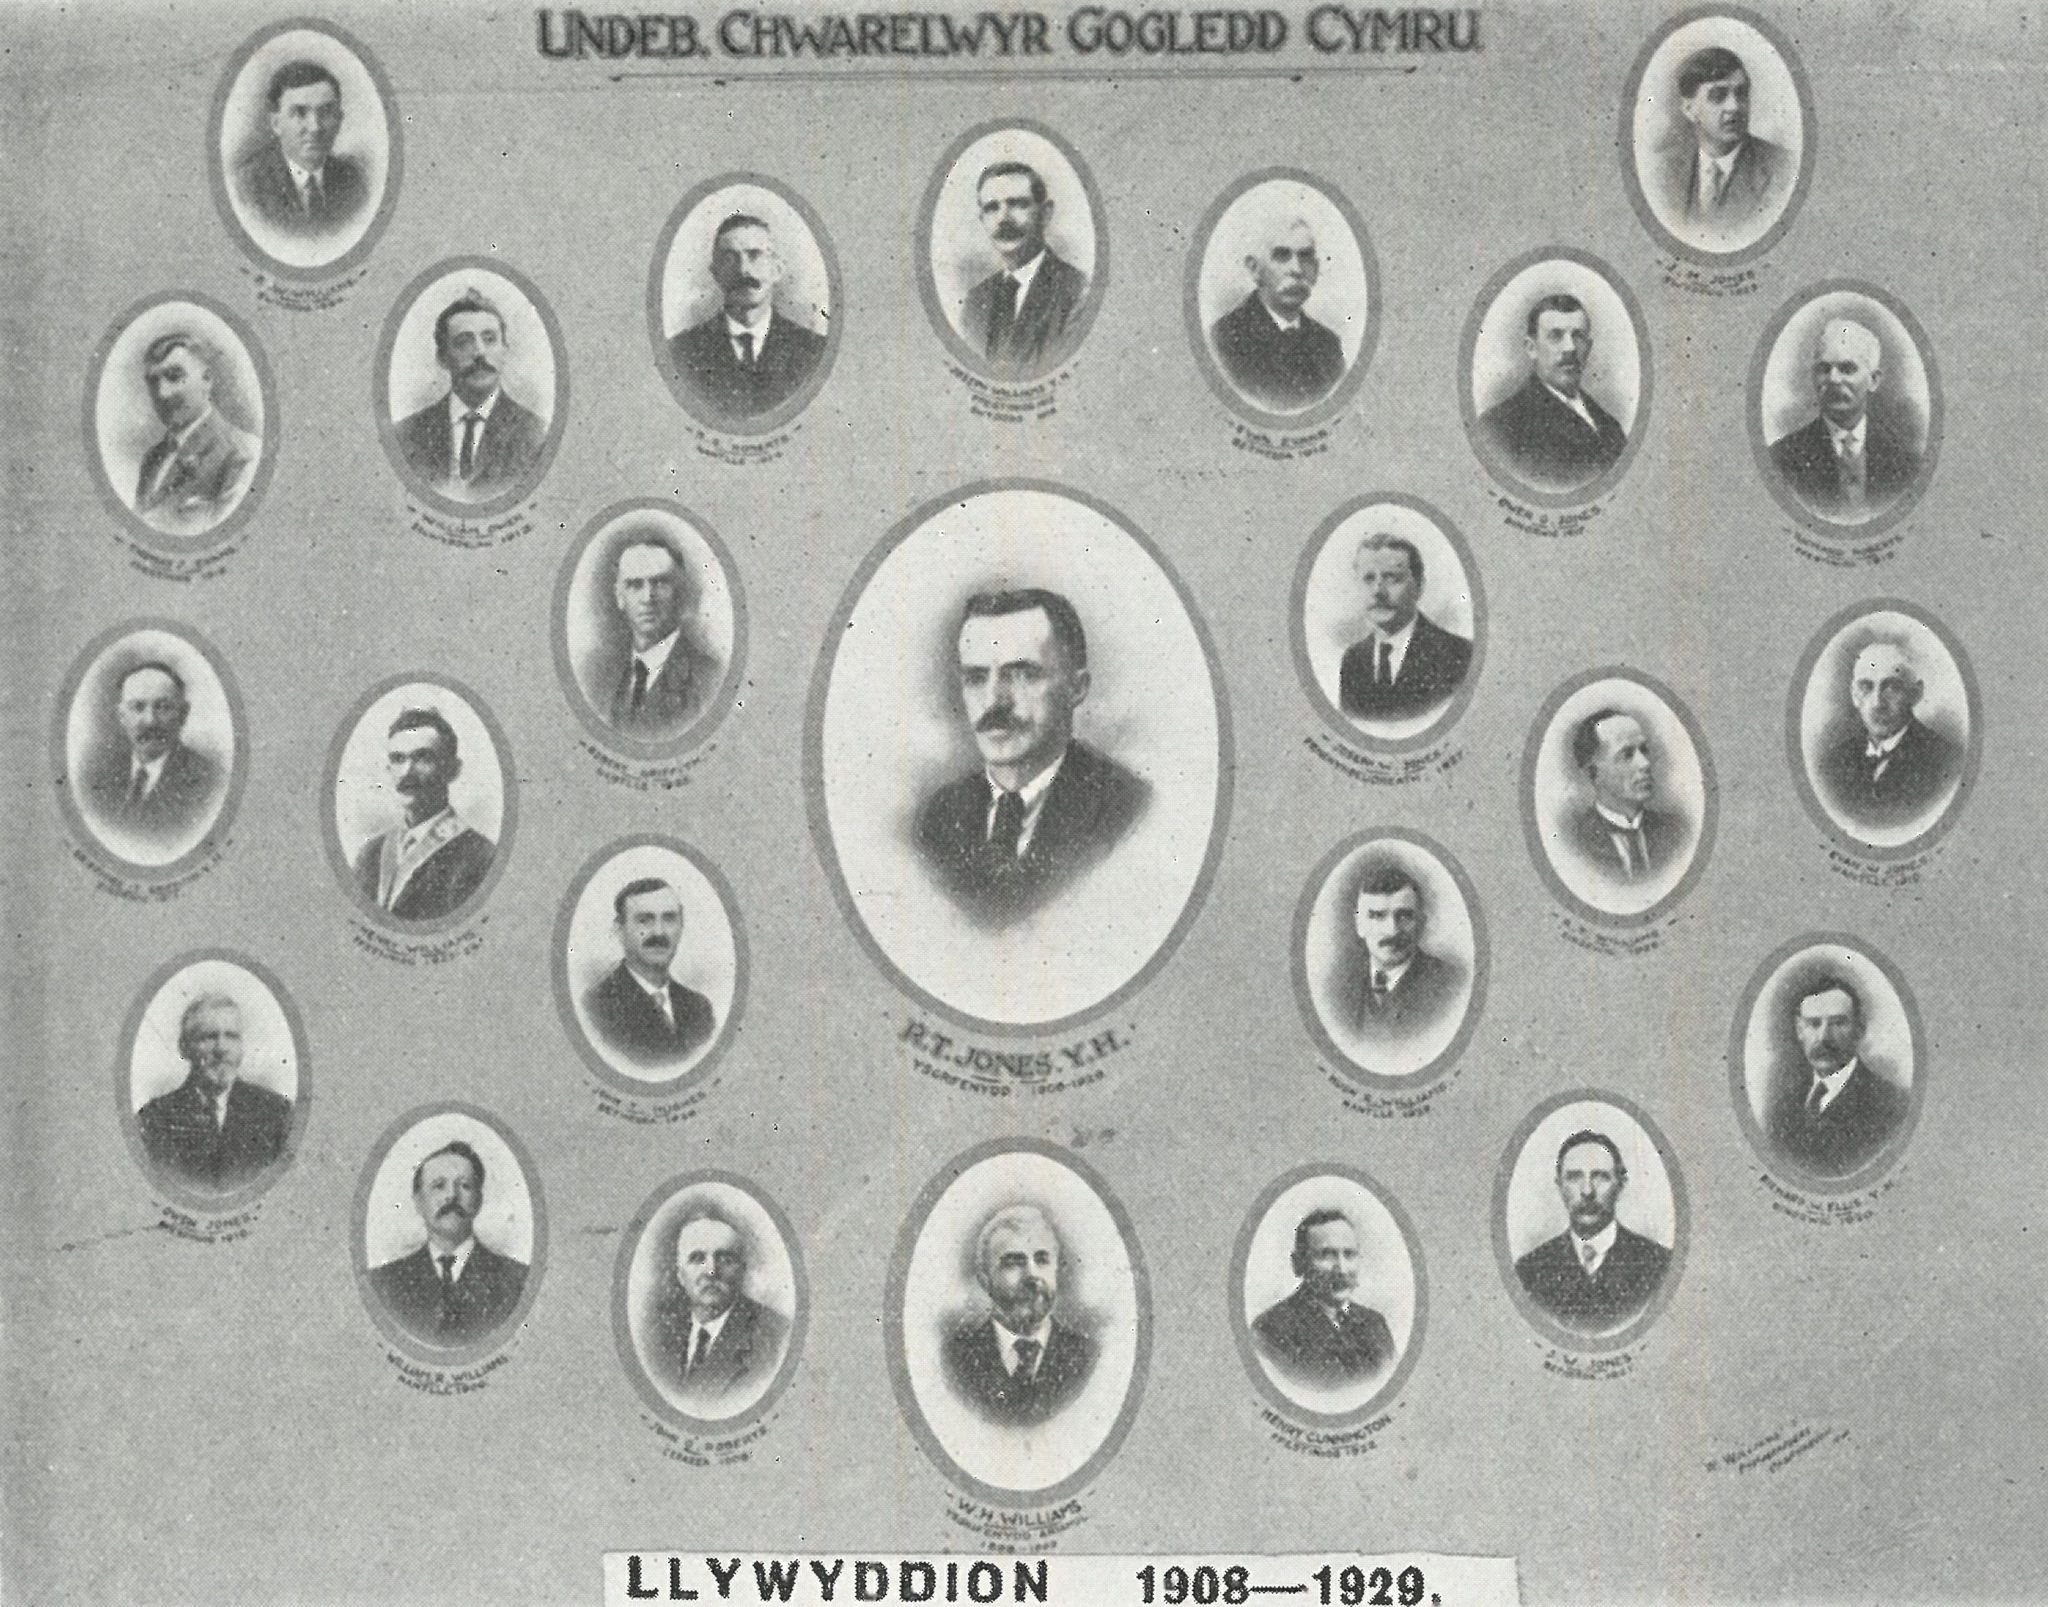 Llun o lywyddion Undeb Chwarelwyr Gogledd Cymru rhwng 1908-1929